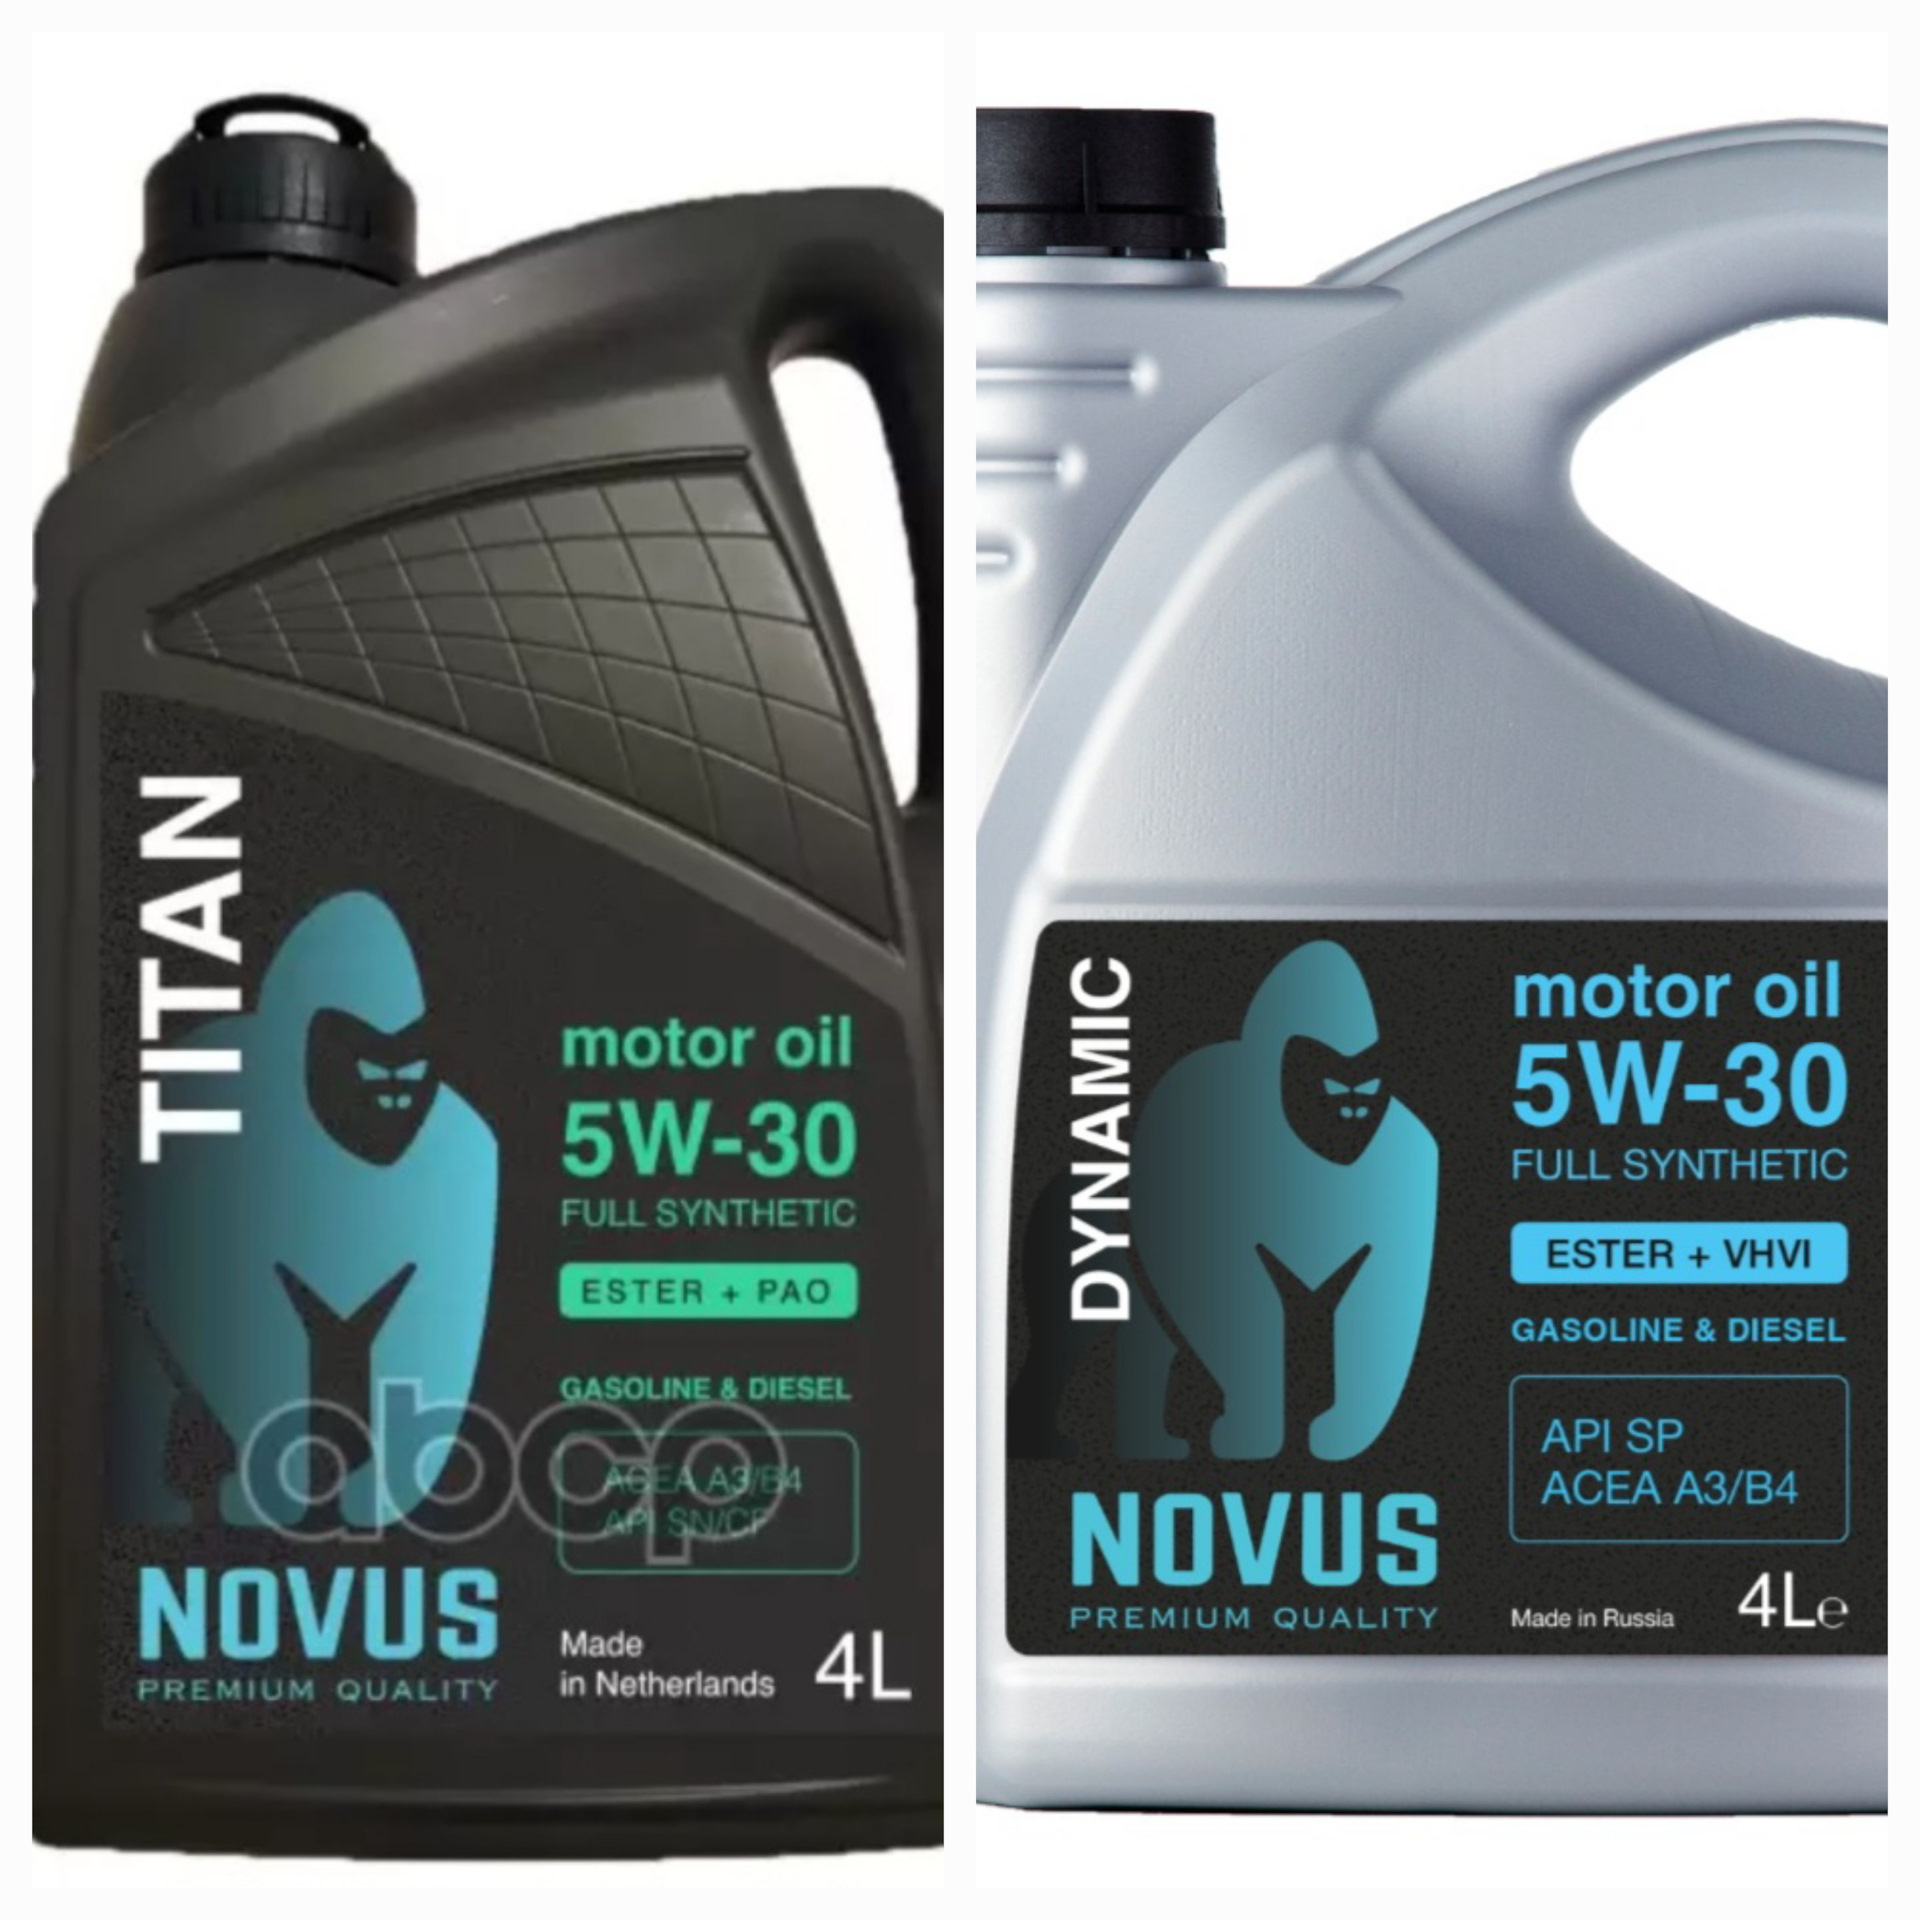 Купить масло титан 5w30. Novus Titan 5-30. Novus 5w30. Масло Novus Titan 5w30. Novus 5w30 a5b5.